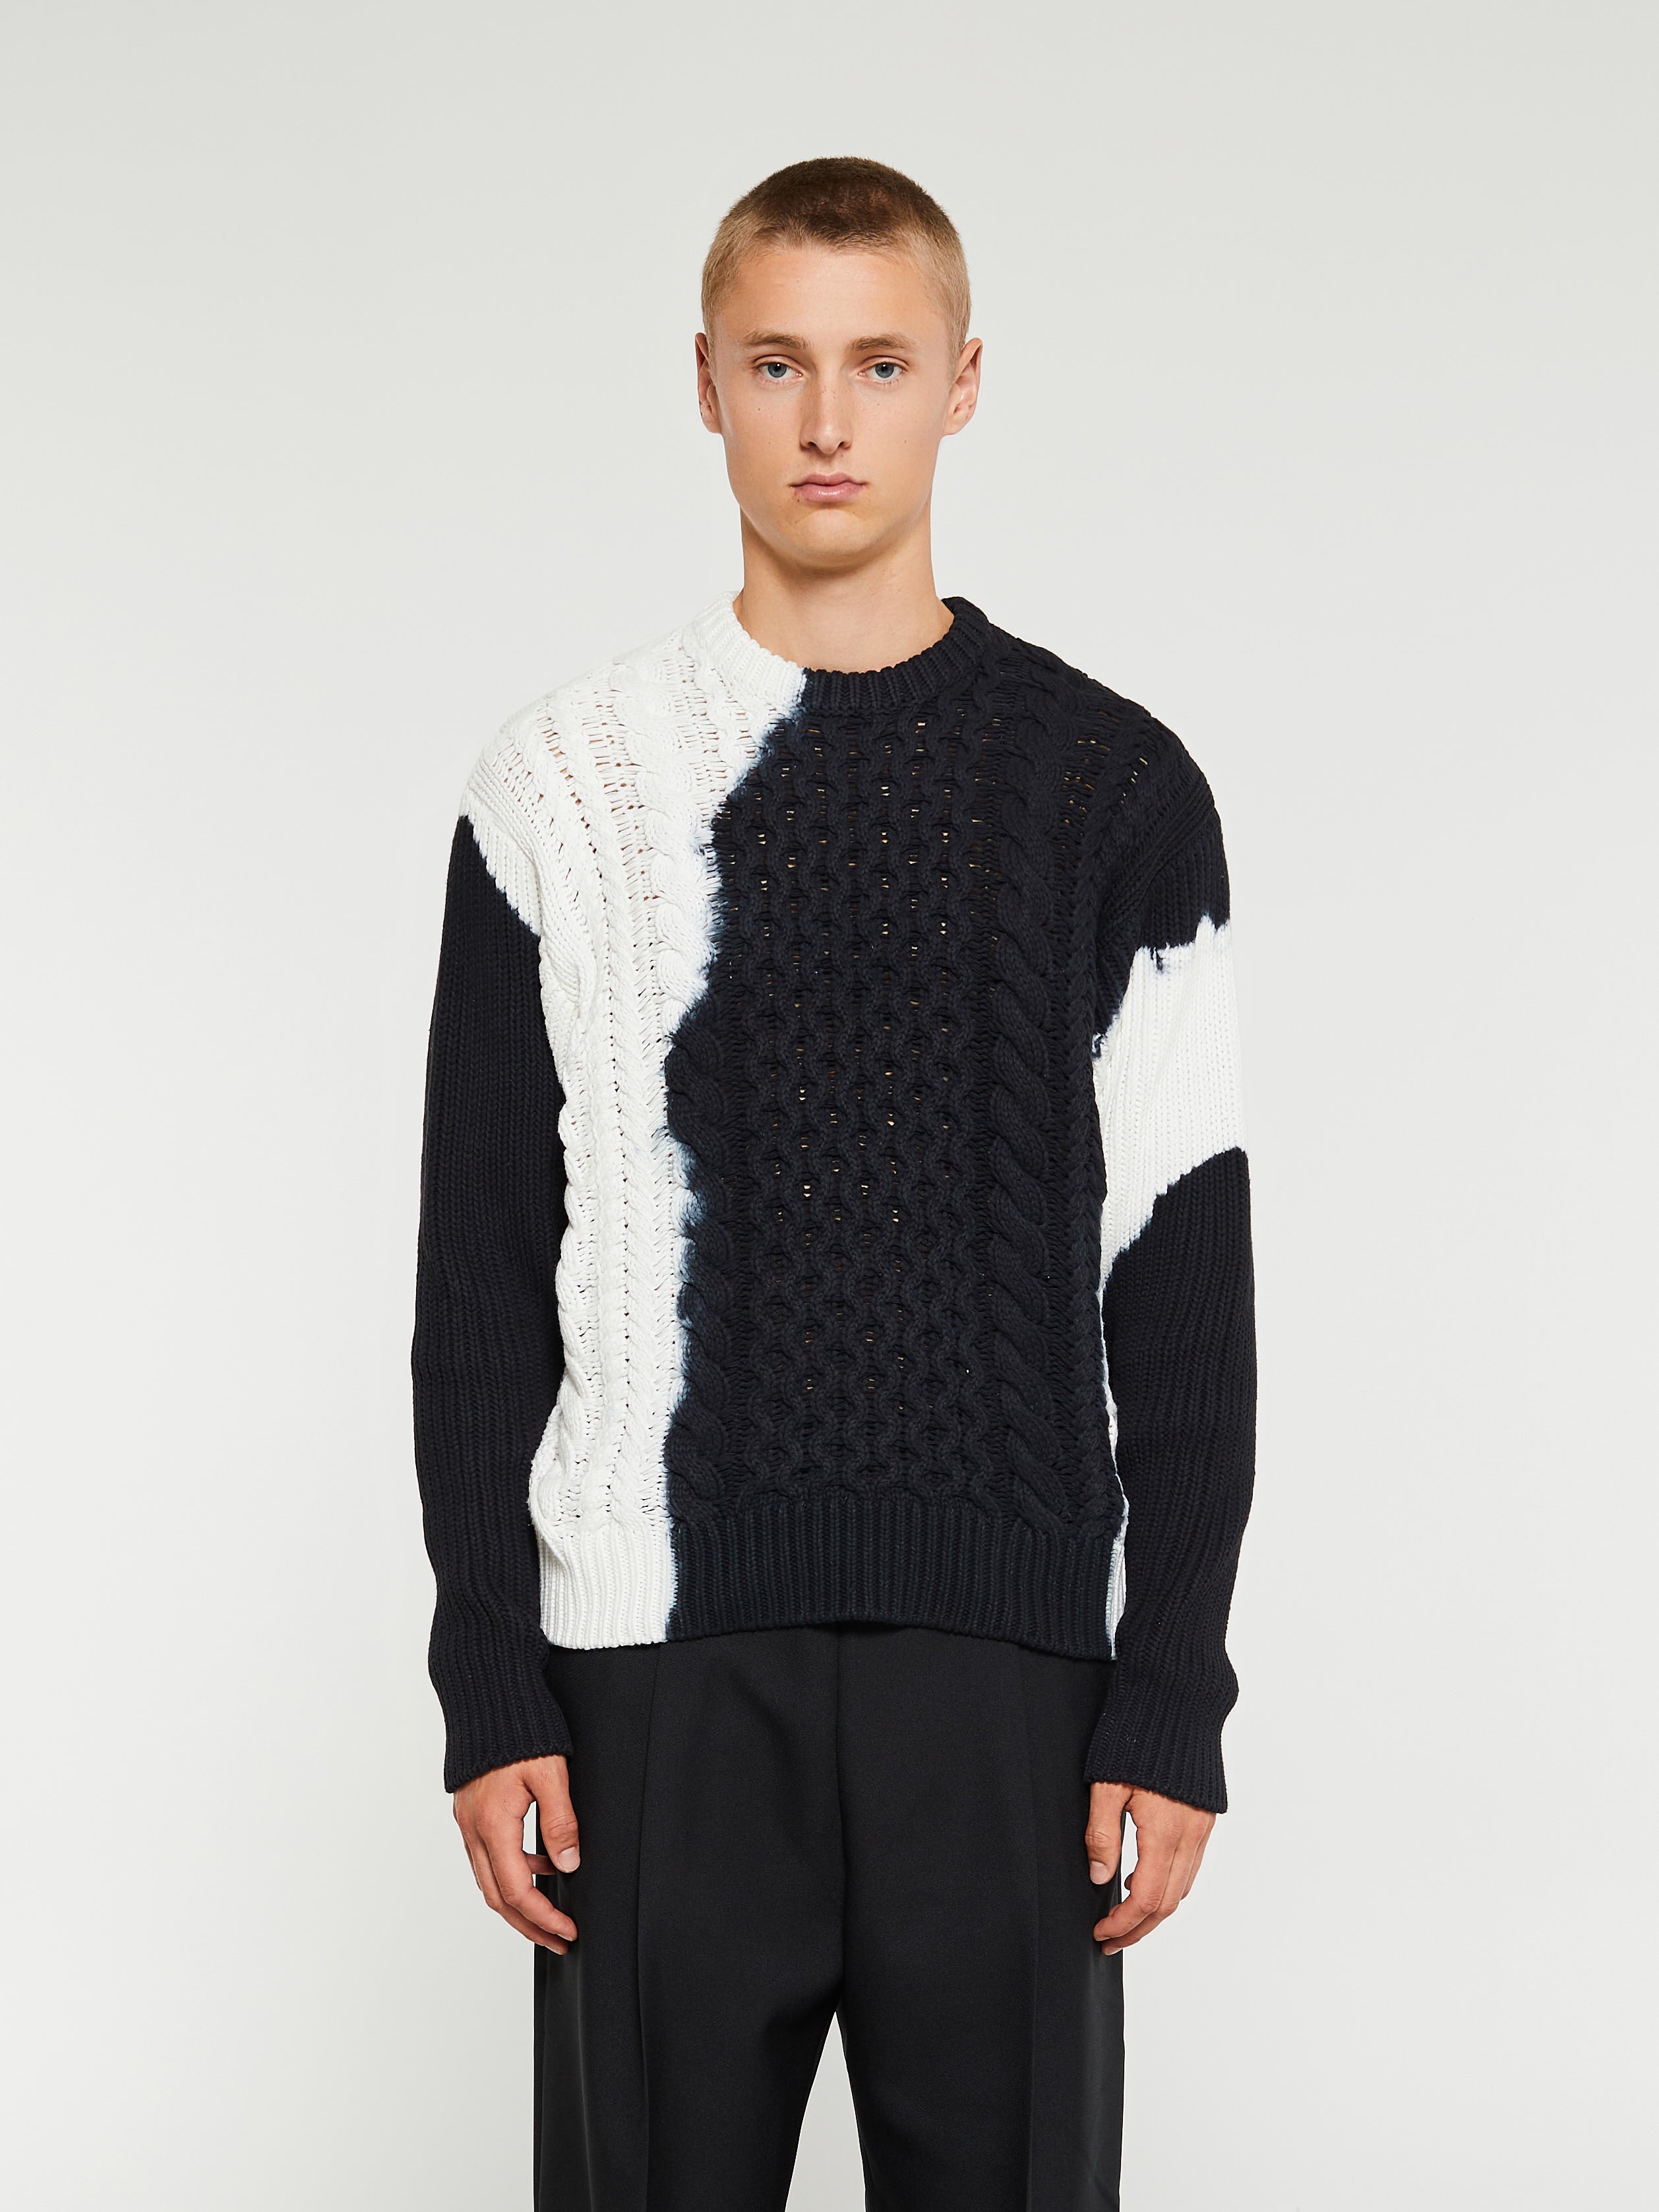 Stüssy - Tie Dye Fisherman Sweater in Black